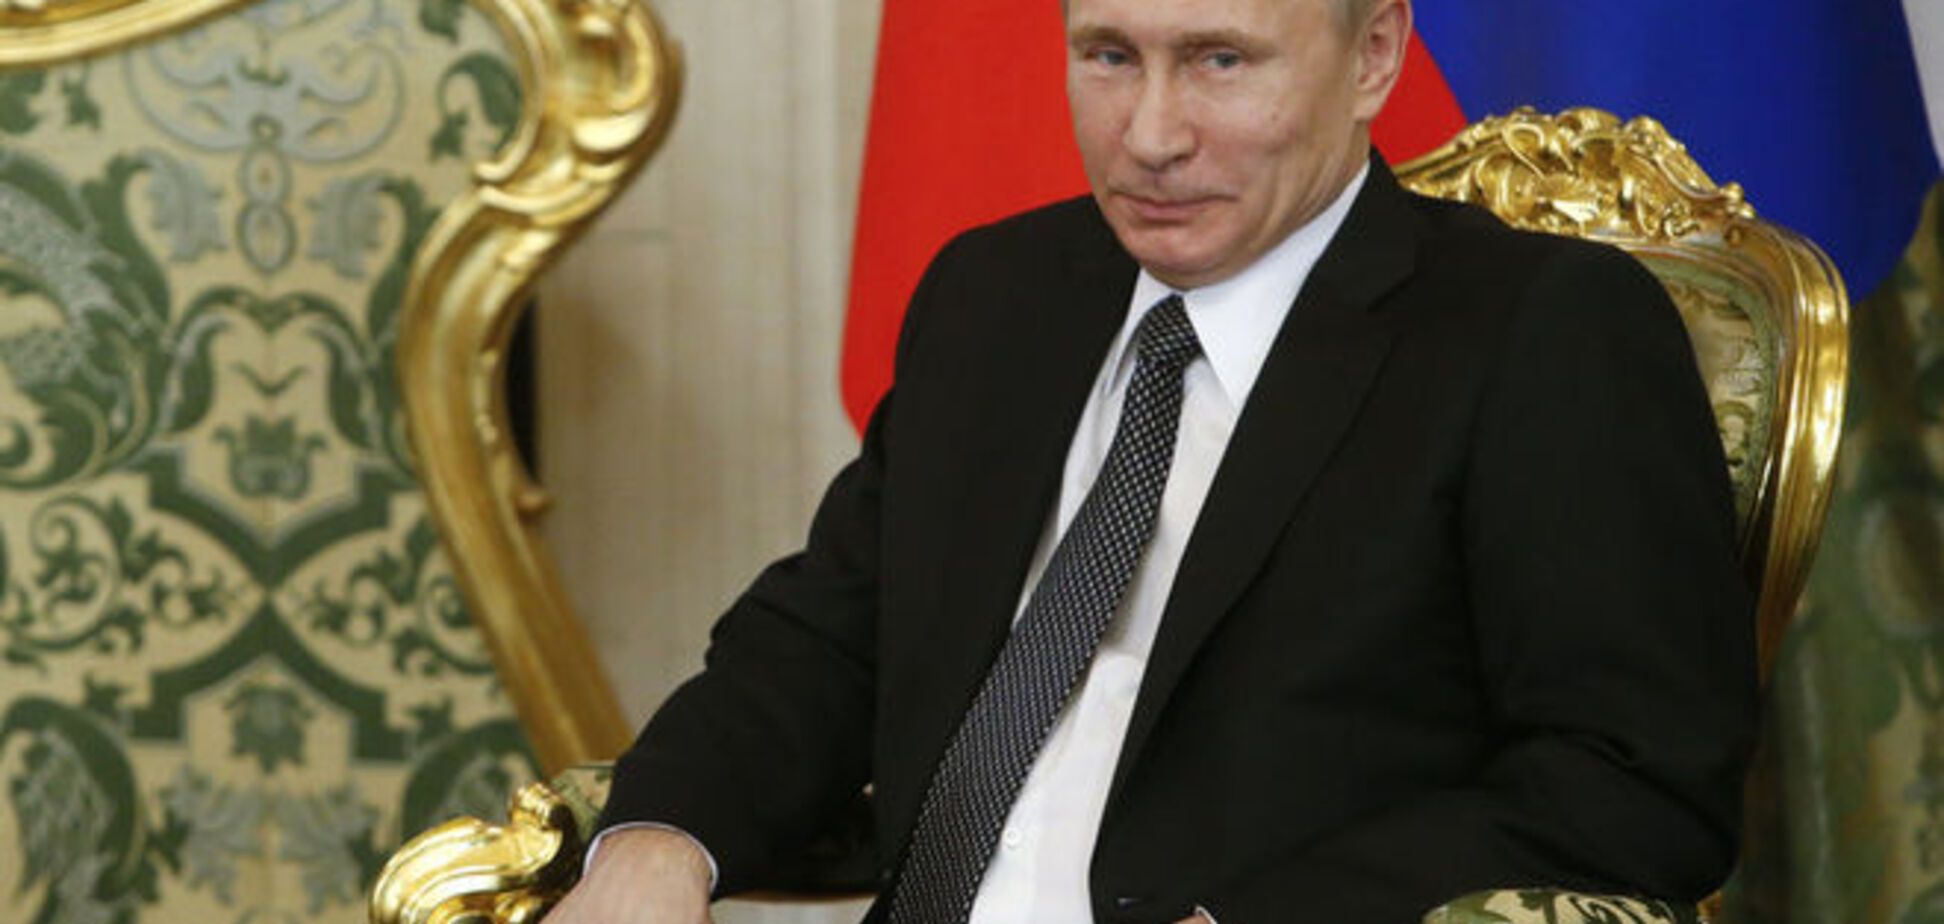 Соціологи оголосили Путіна переможцем гіпотетичних виборів президента Росії